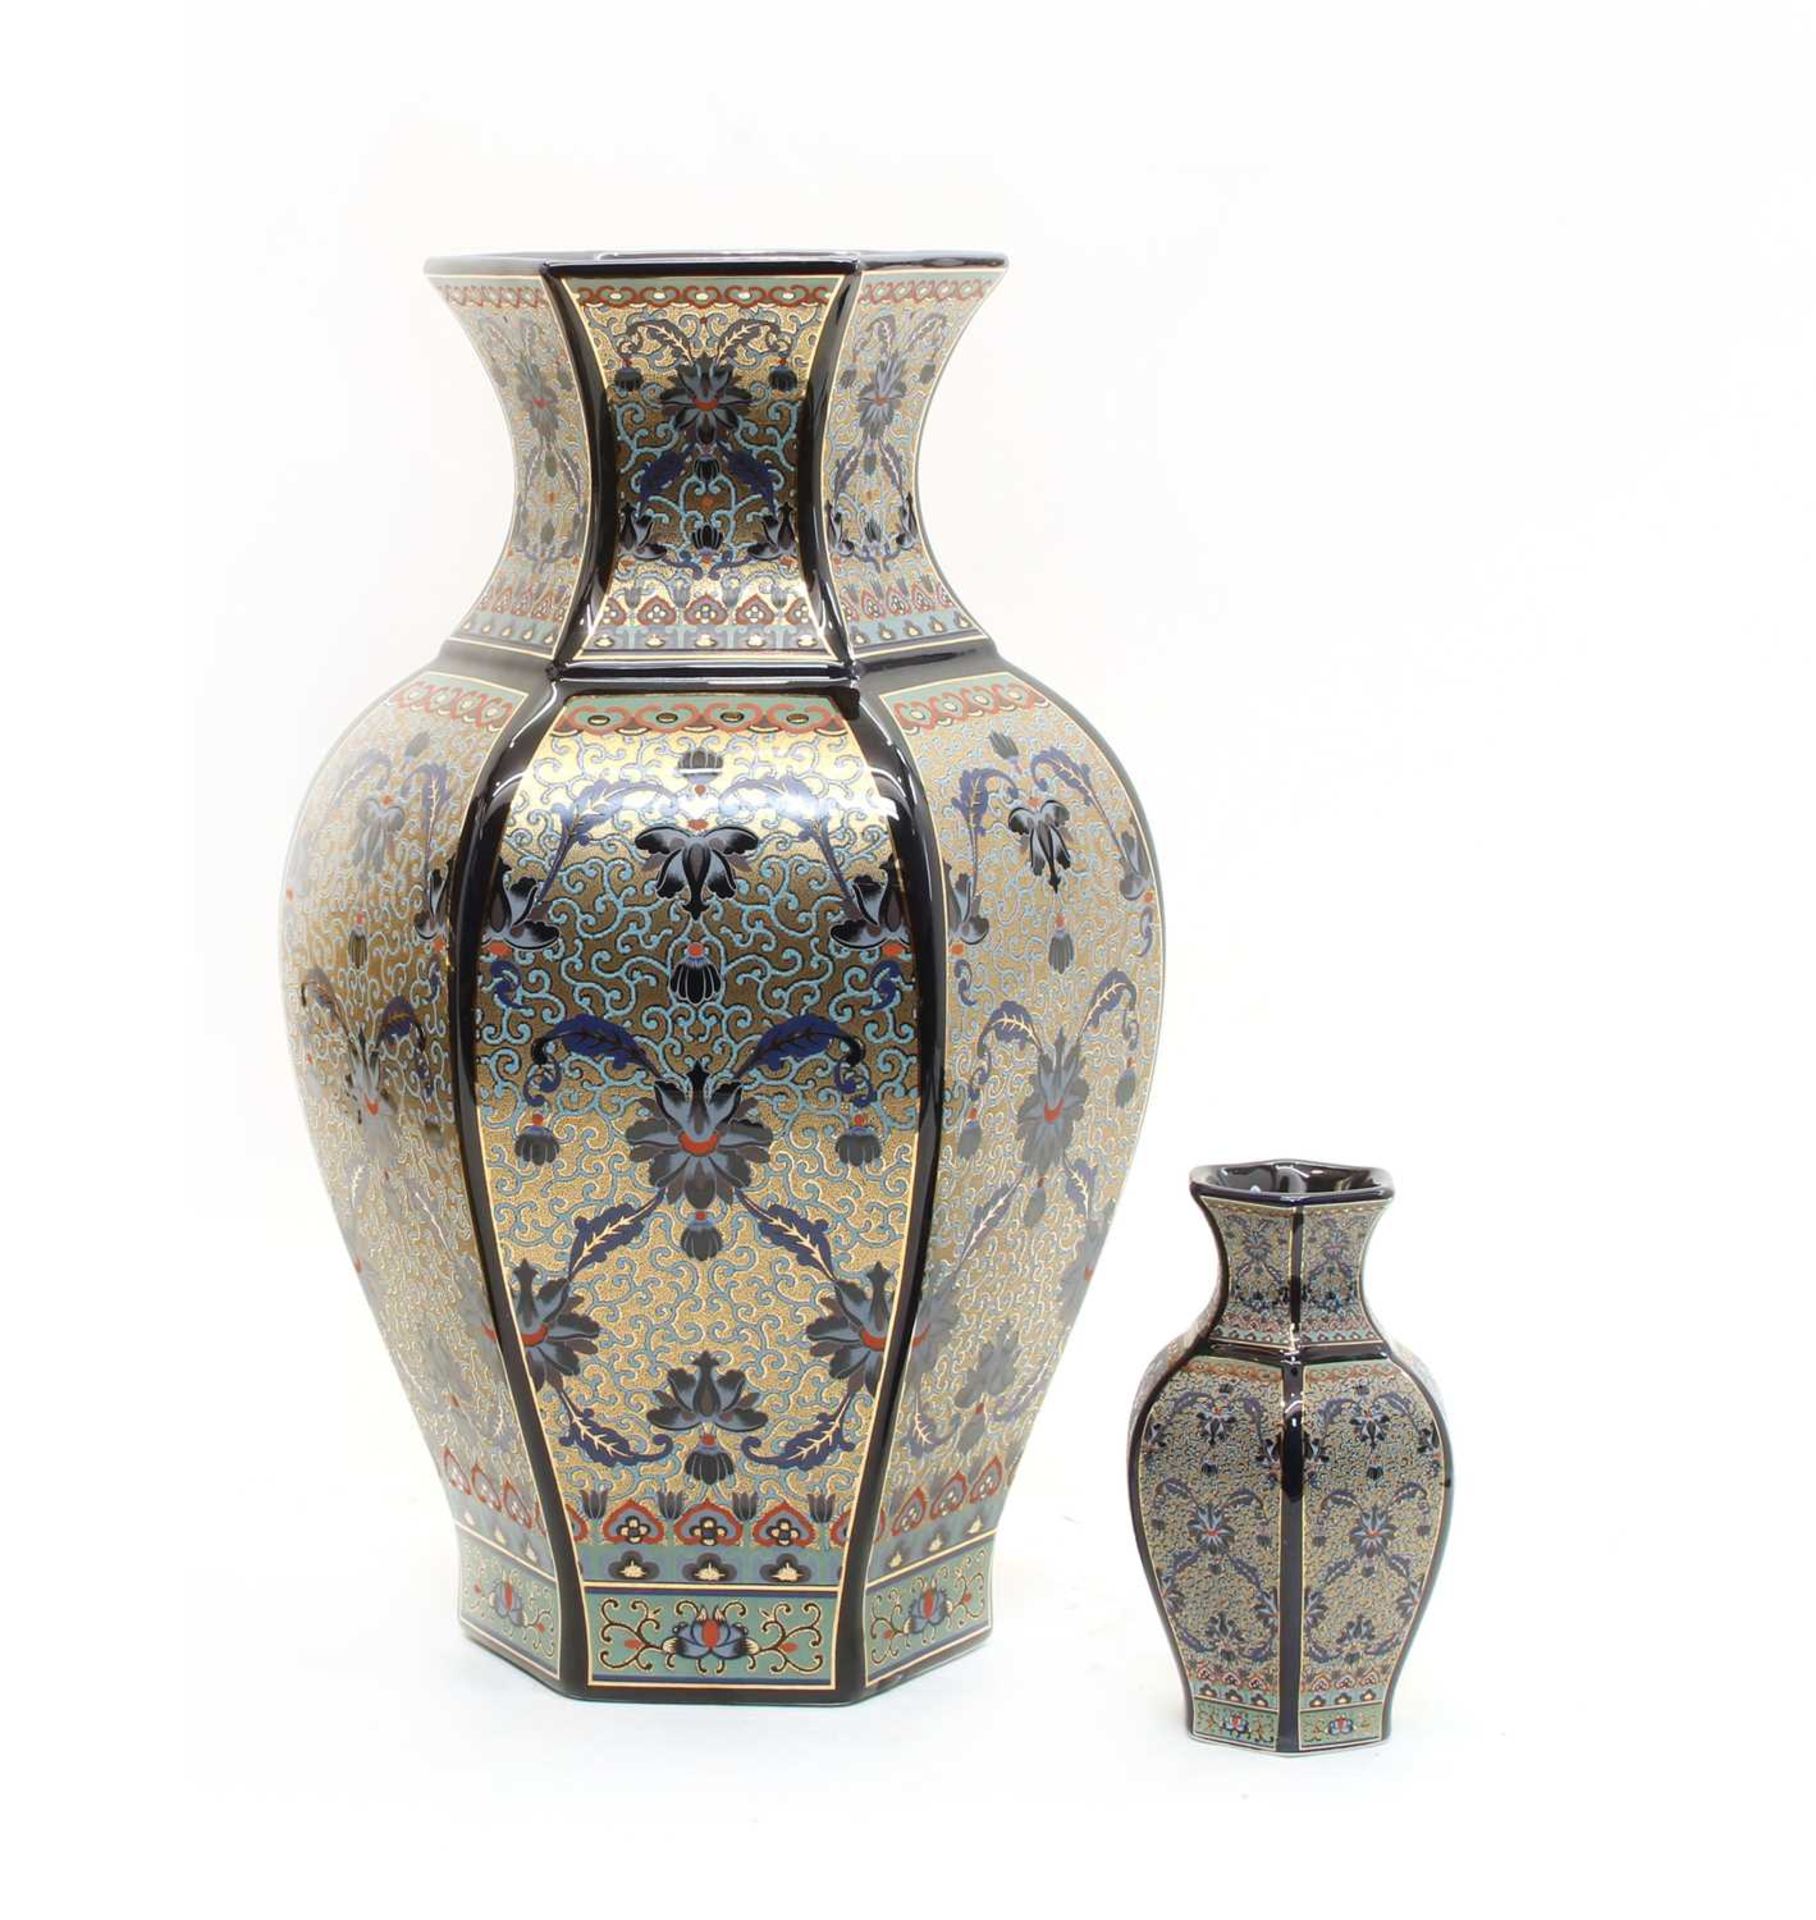 A large blue glazed porcelain vase of Persian design,